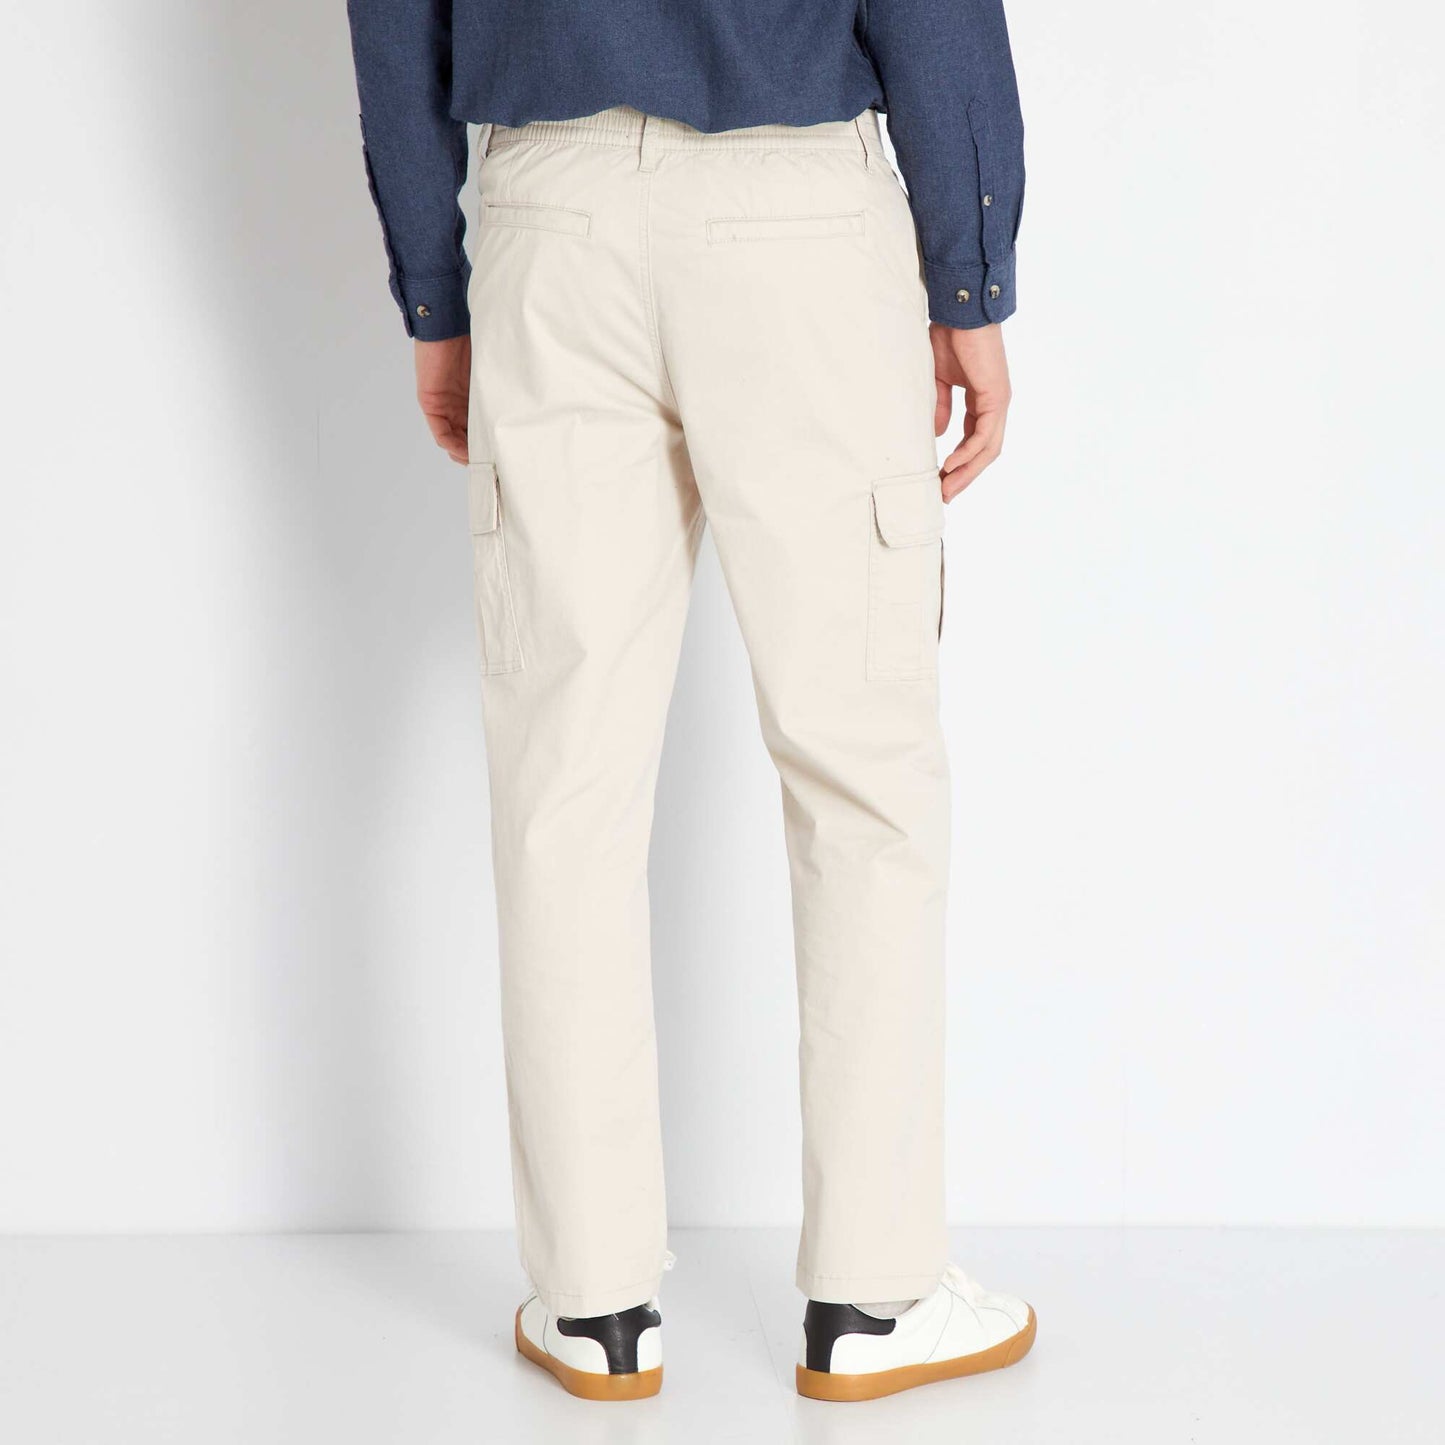 Pantalon chino avec poches cargos gris beige